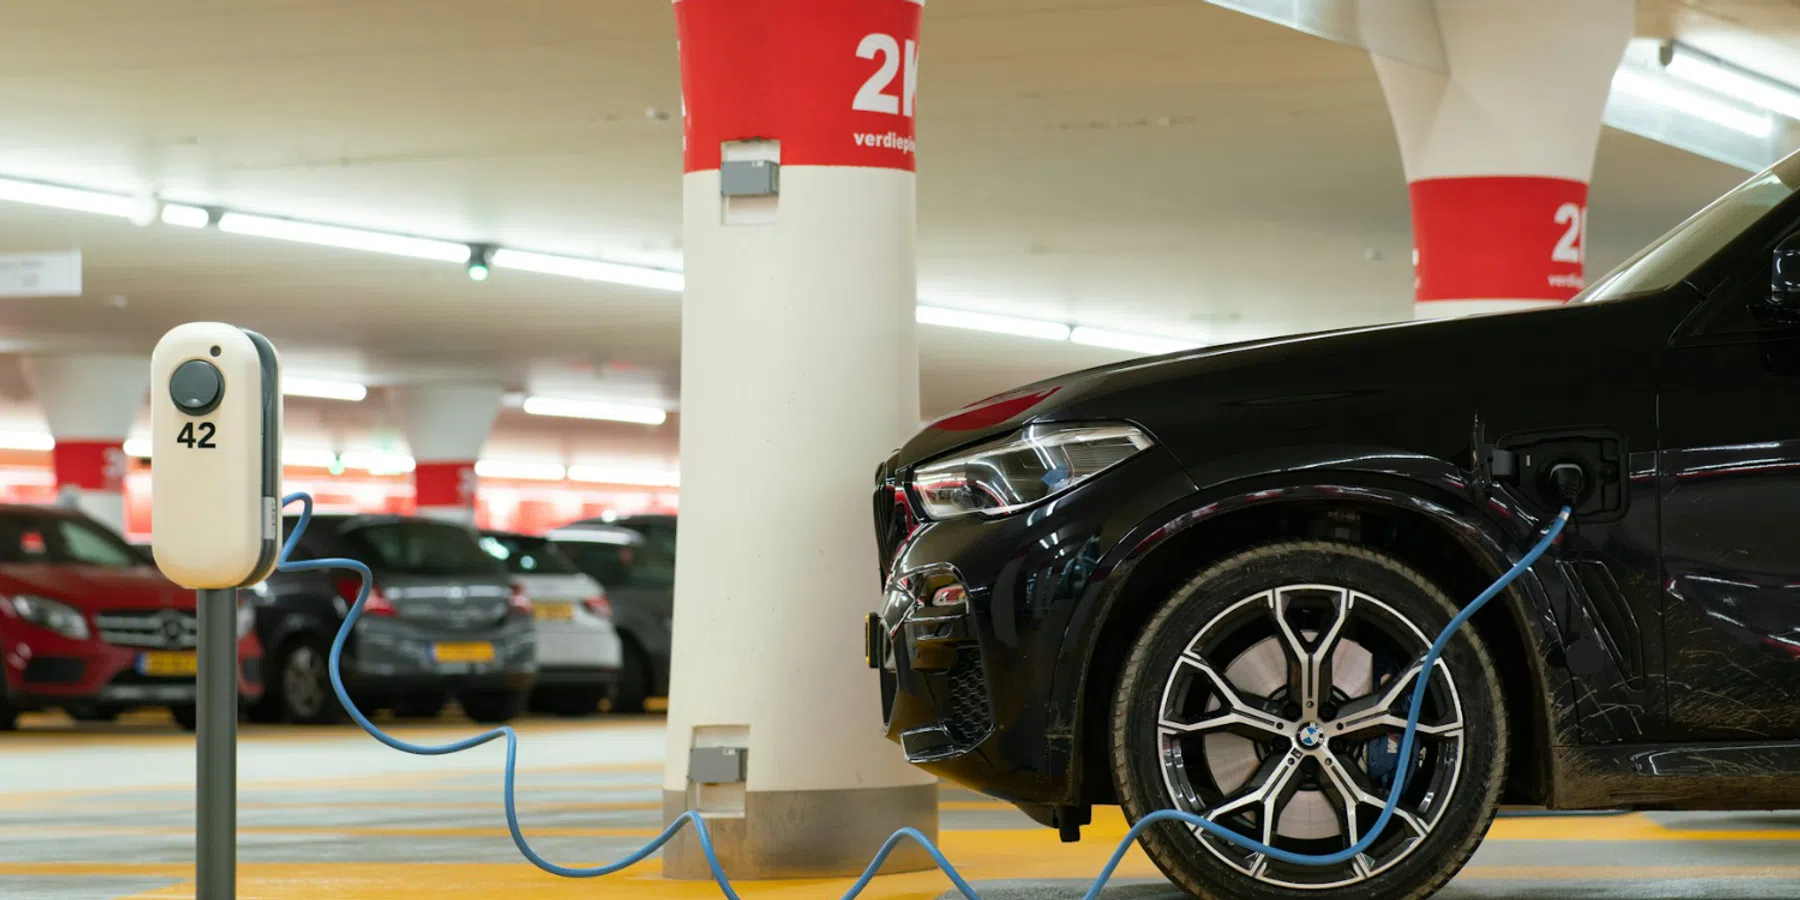 Verkoop elektrische auto stijgt 25%